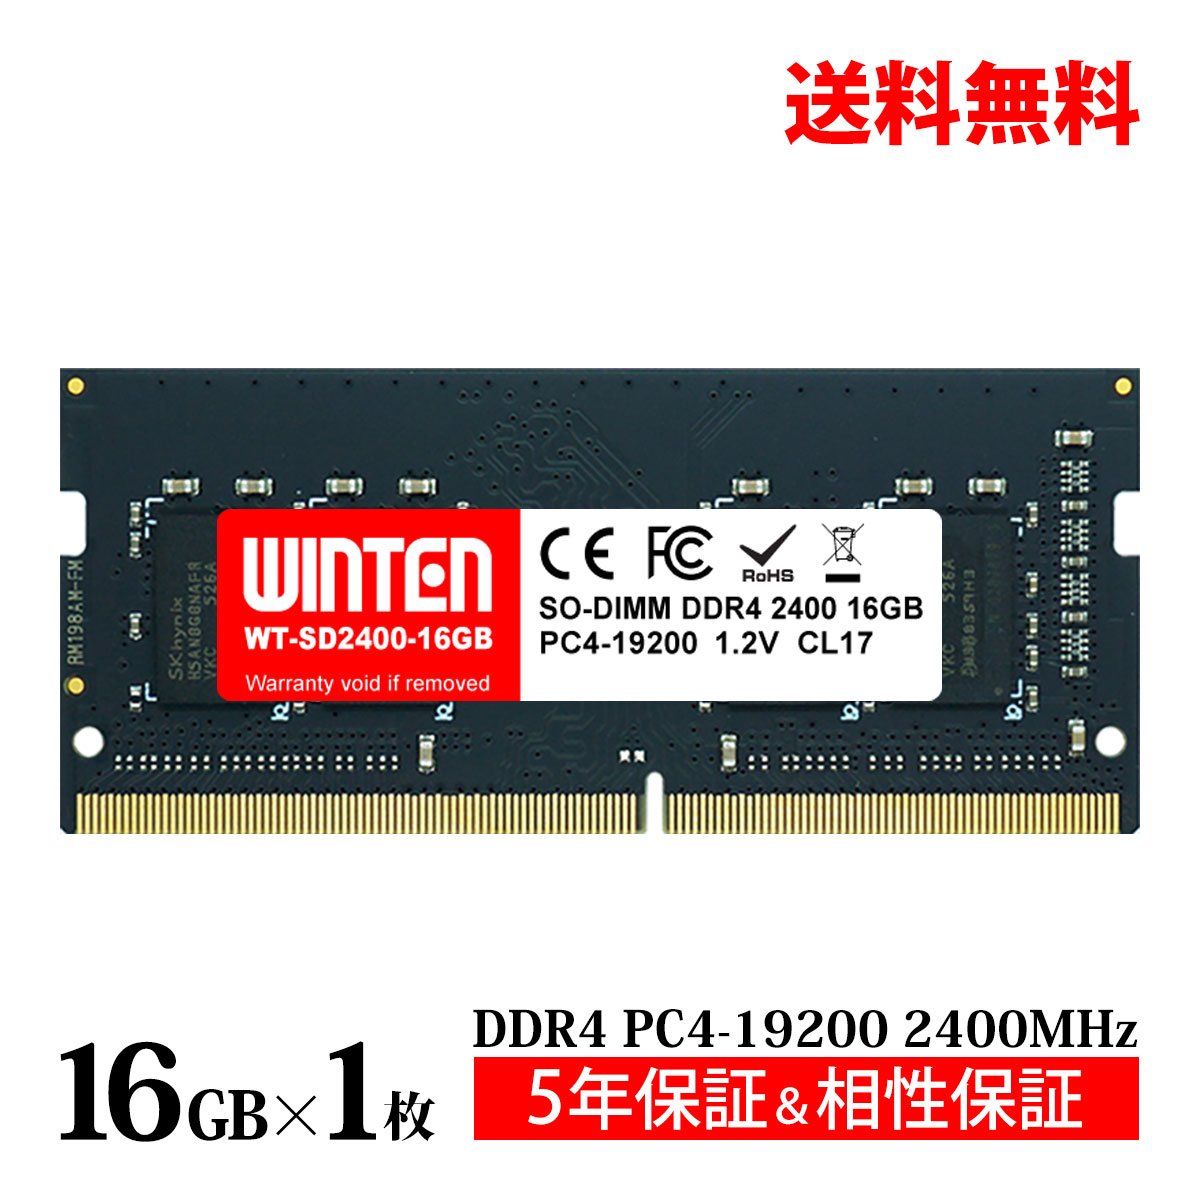 【中古】中古美品 日本ELPIDA(HP) PC2-5300F 2GB FB DIMM 2枚セット 合計4GB khxv5rg